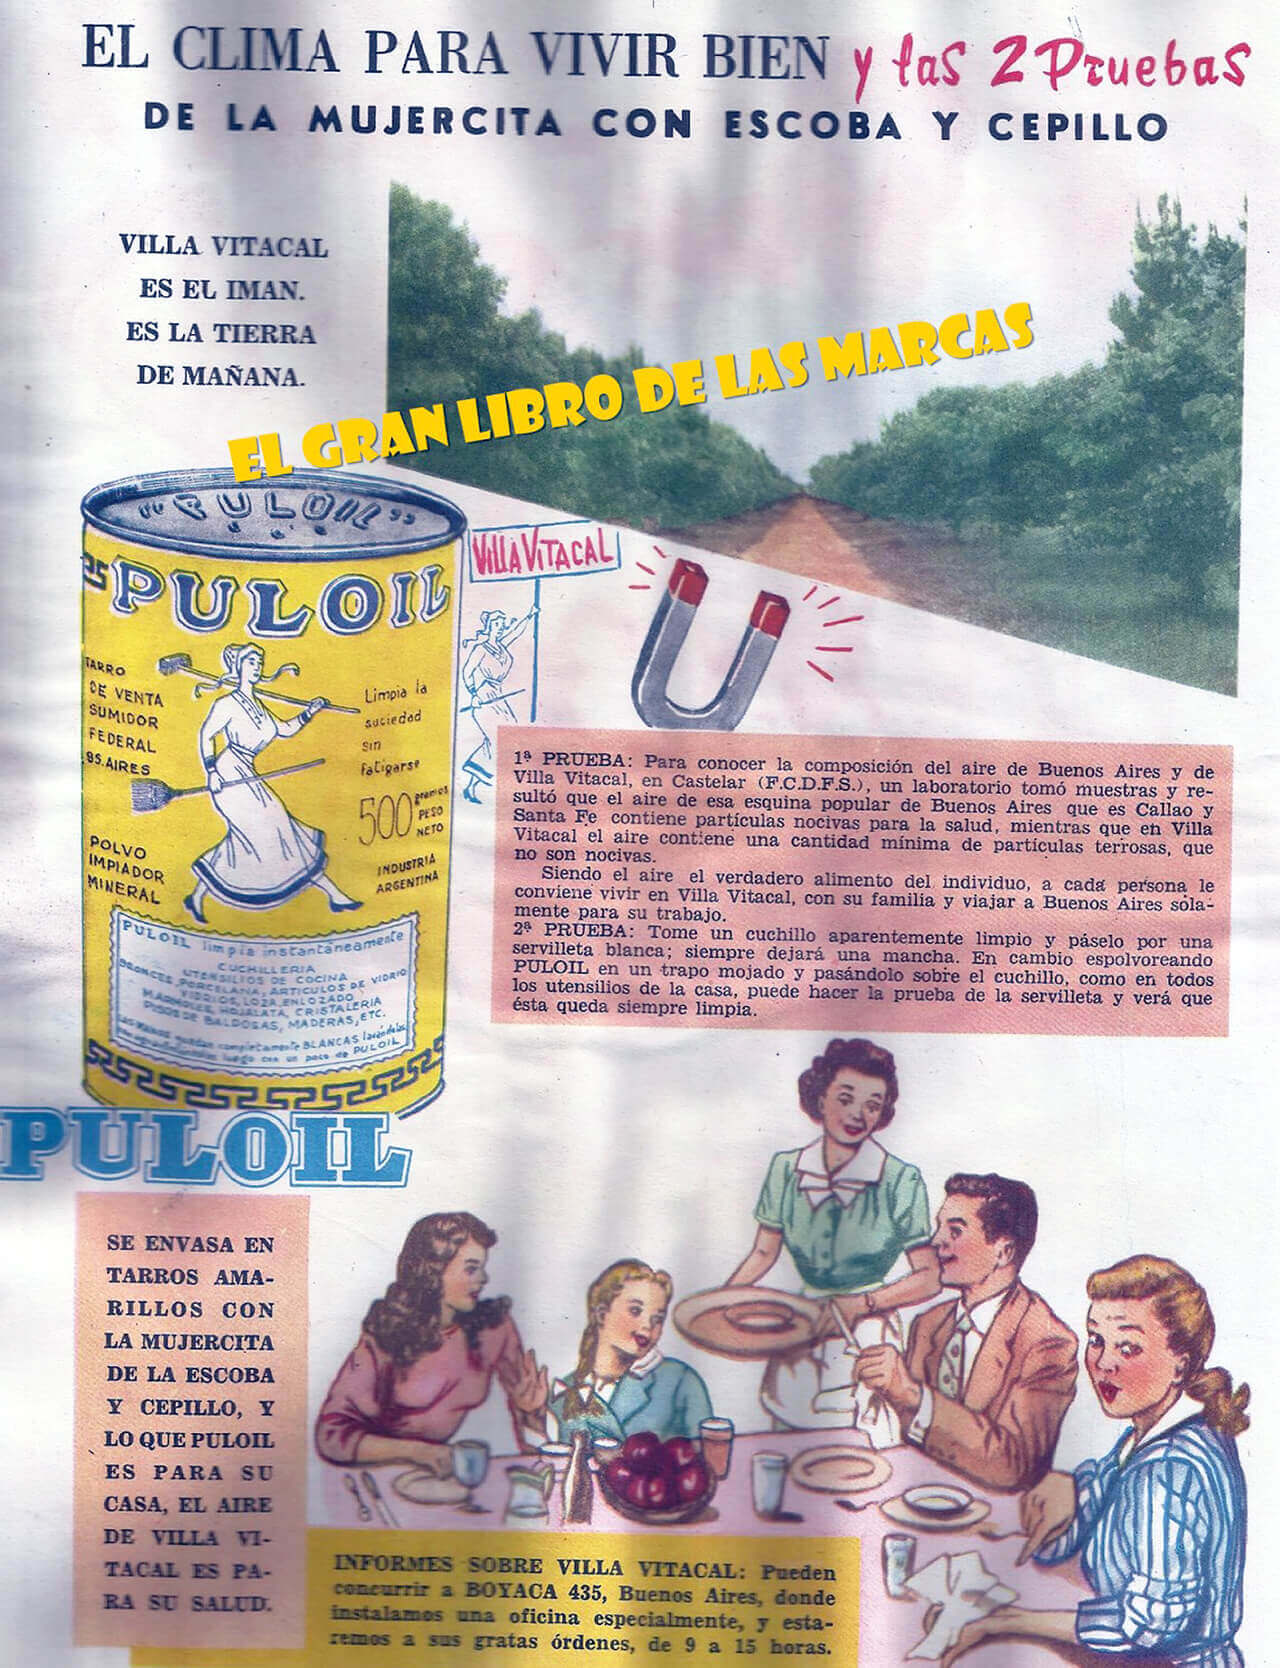 Publicidad es de 1956 en la que cuenta la historia de Villa Vitacal, de lo puro y limpio que es su aire